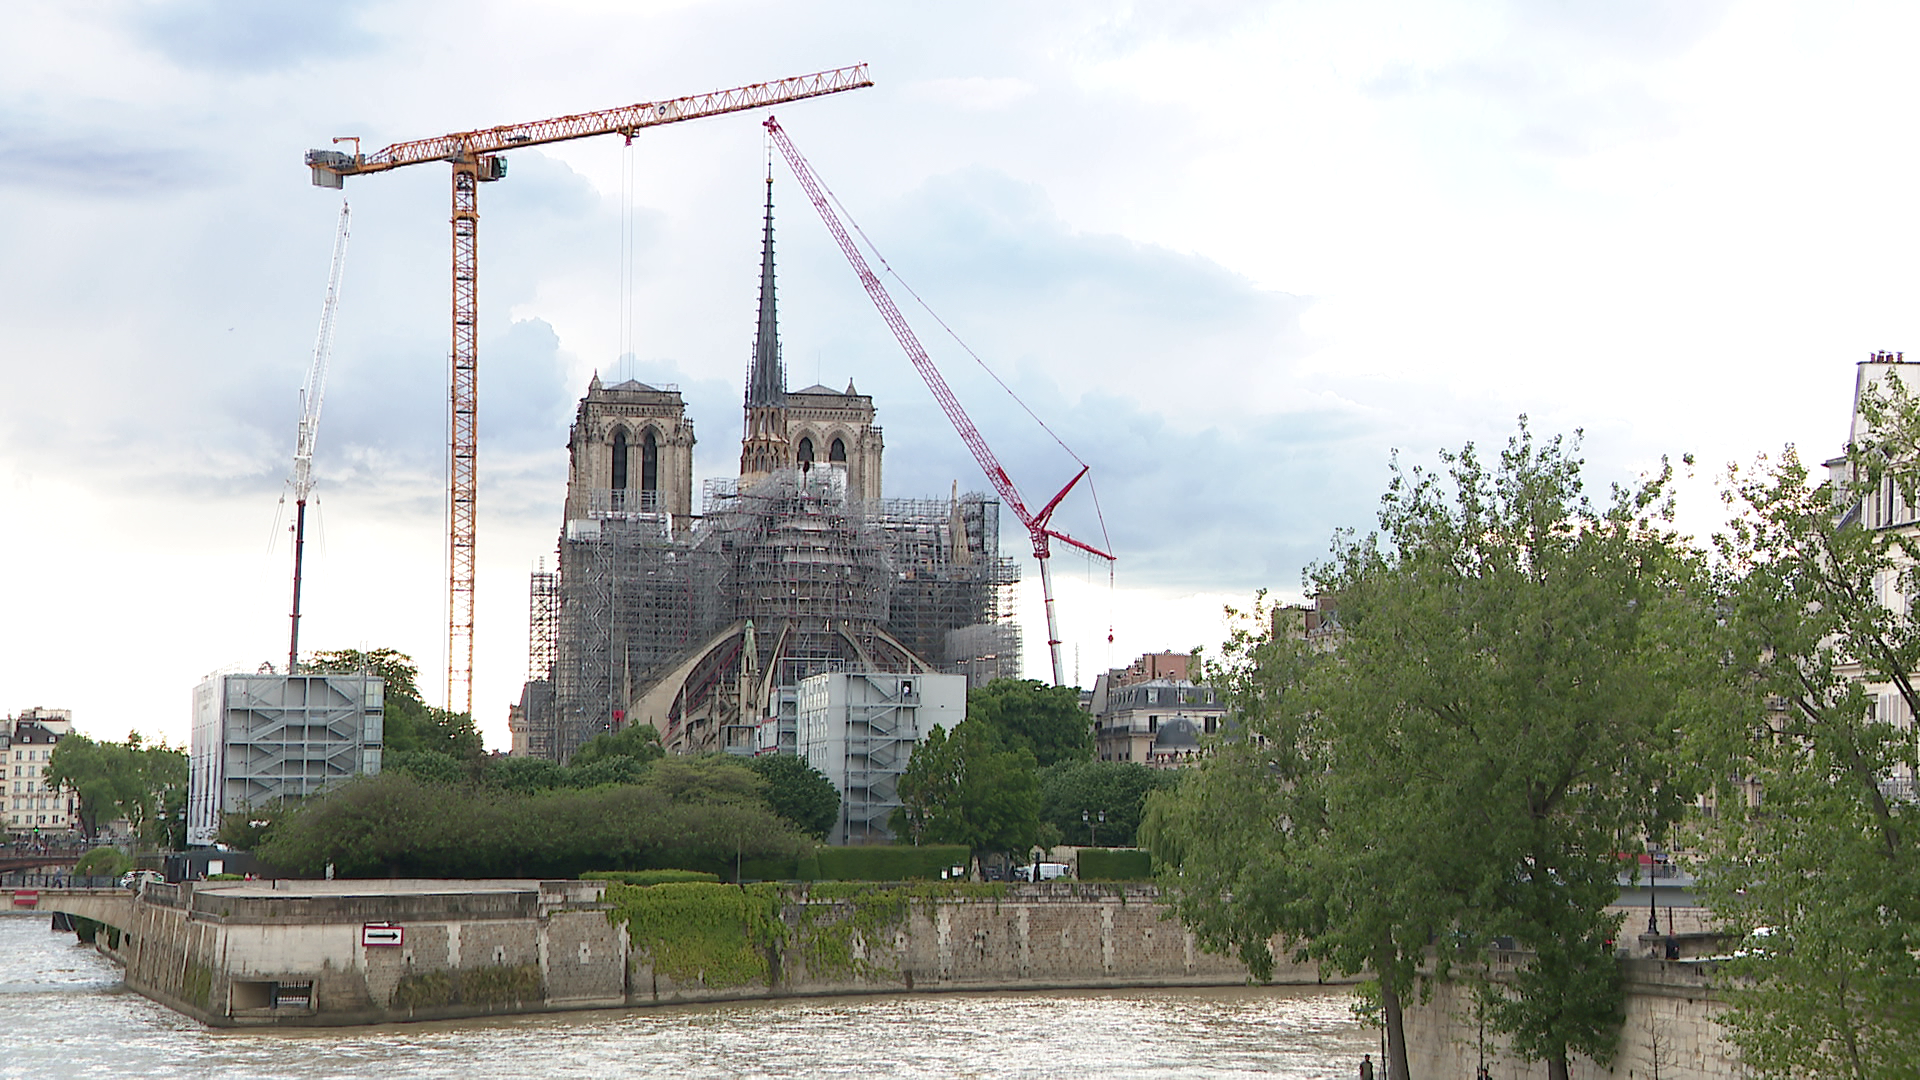 Év végén nyithatja meg kapuit a látogatók előtt a Notre-Dame, amely öt éve szinte teljesen leégett + videó